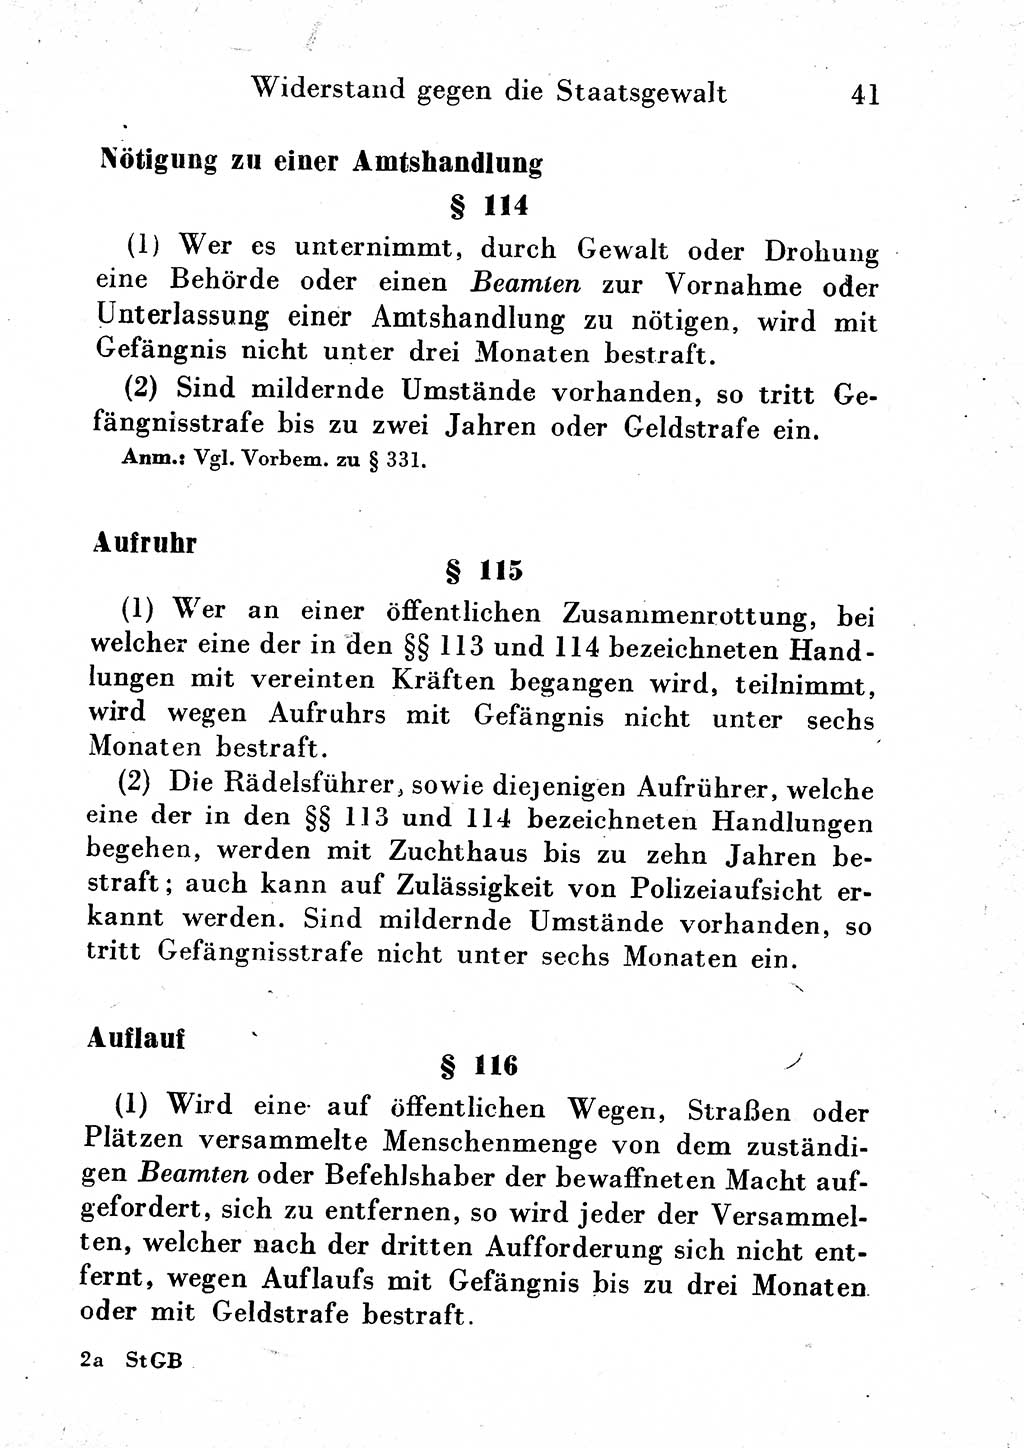 Strafgesetzbuch (StGB) und andere Strafgesetze [Deutsche Demokratische Republik (DDR)] 1954, Seite 41 (StGB Strafges. DDR 1954, S. 41)